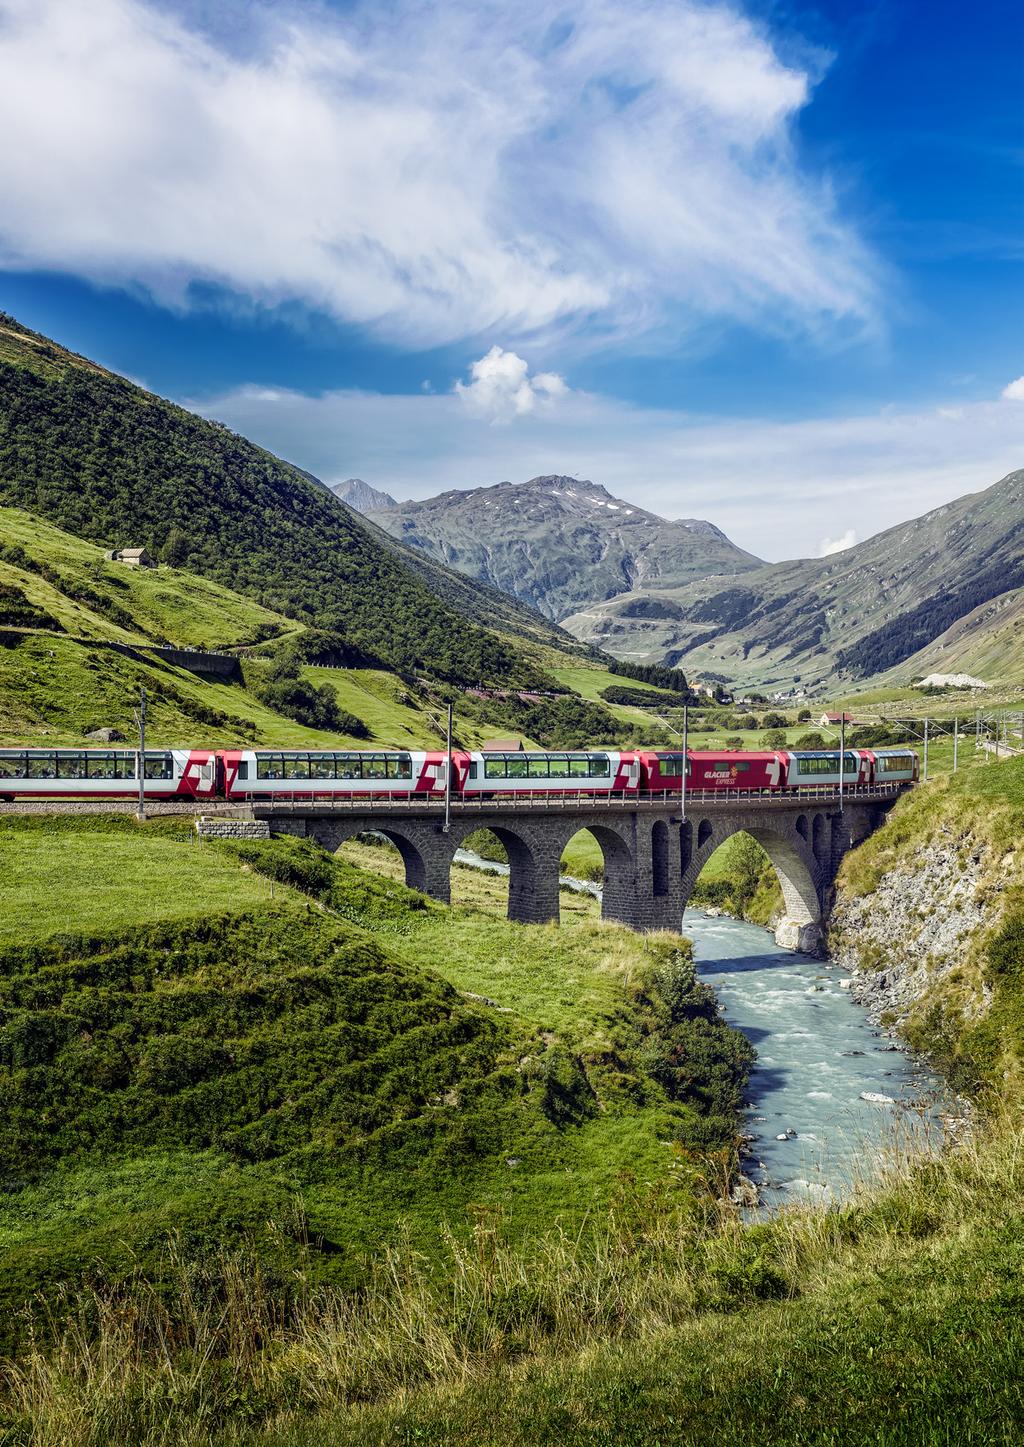 Panoramareisen Schweiz. Kurzferien mit Zug, Bus oder Schiff. 1. Januar bis 31. Dezember 2017 Buchung telefonisch unter 0848 777 077 (Ortstarif) oder auf sbb.